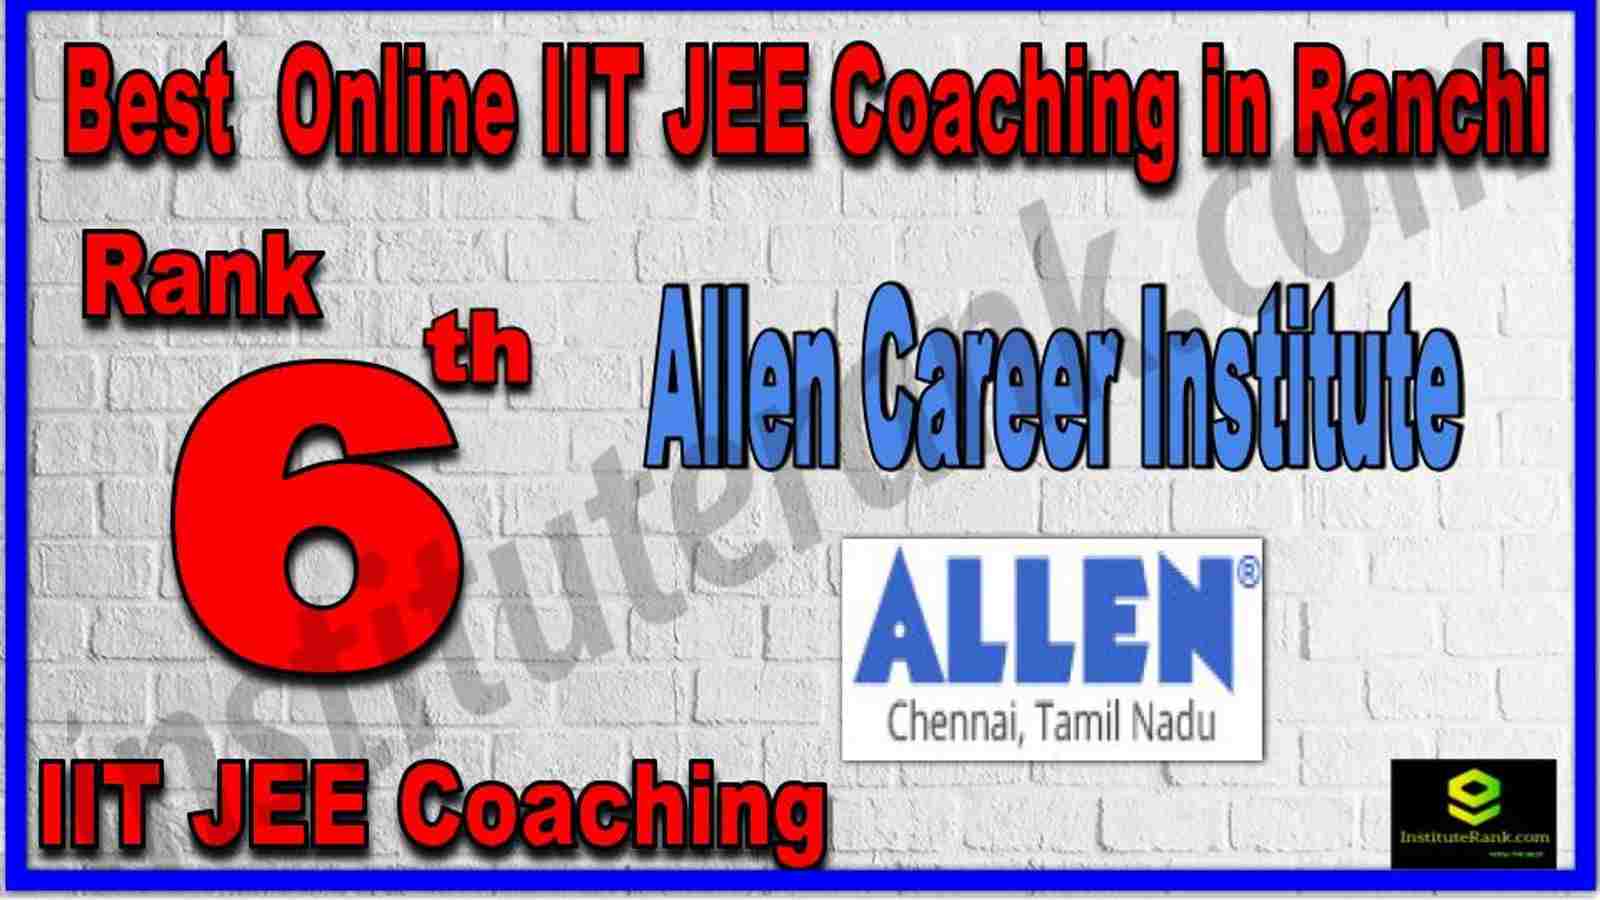 Rank 6th Best Online IIT JEE Coaching in Ranchi